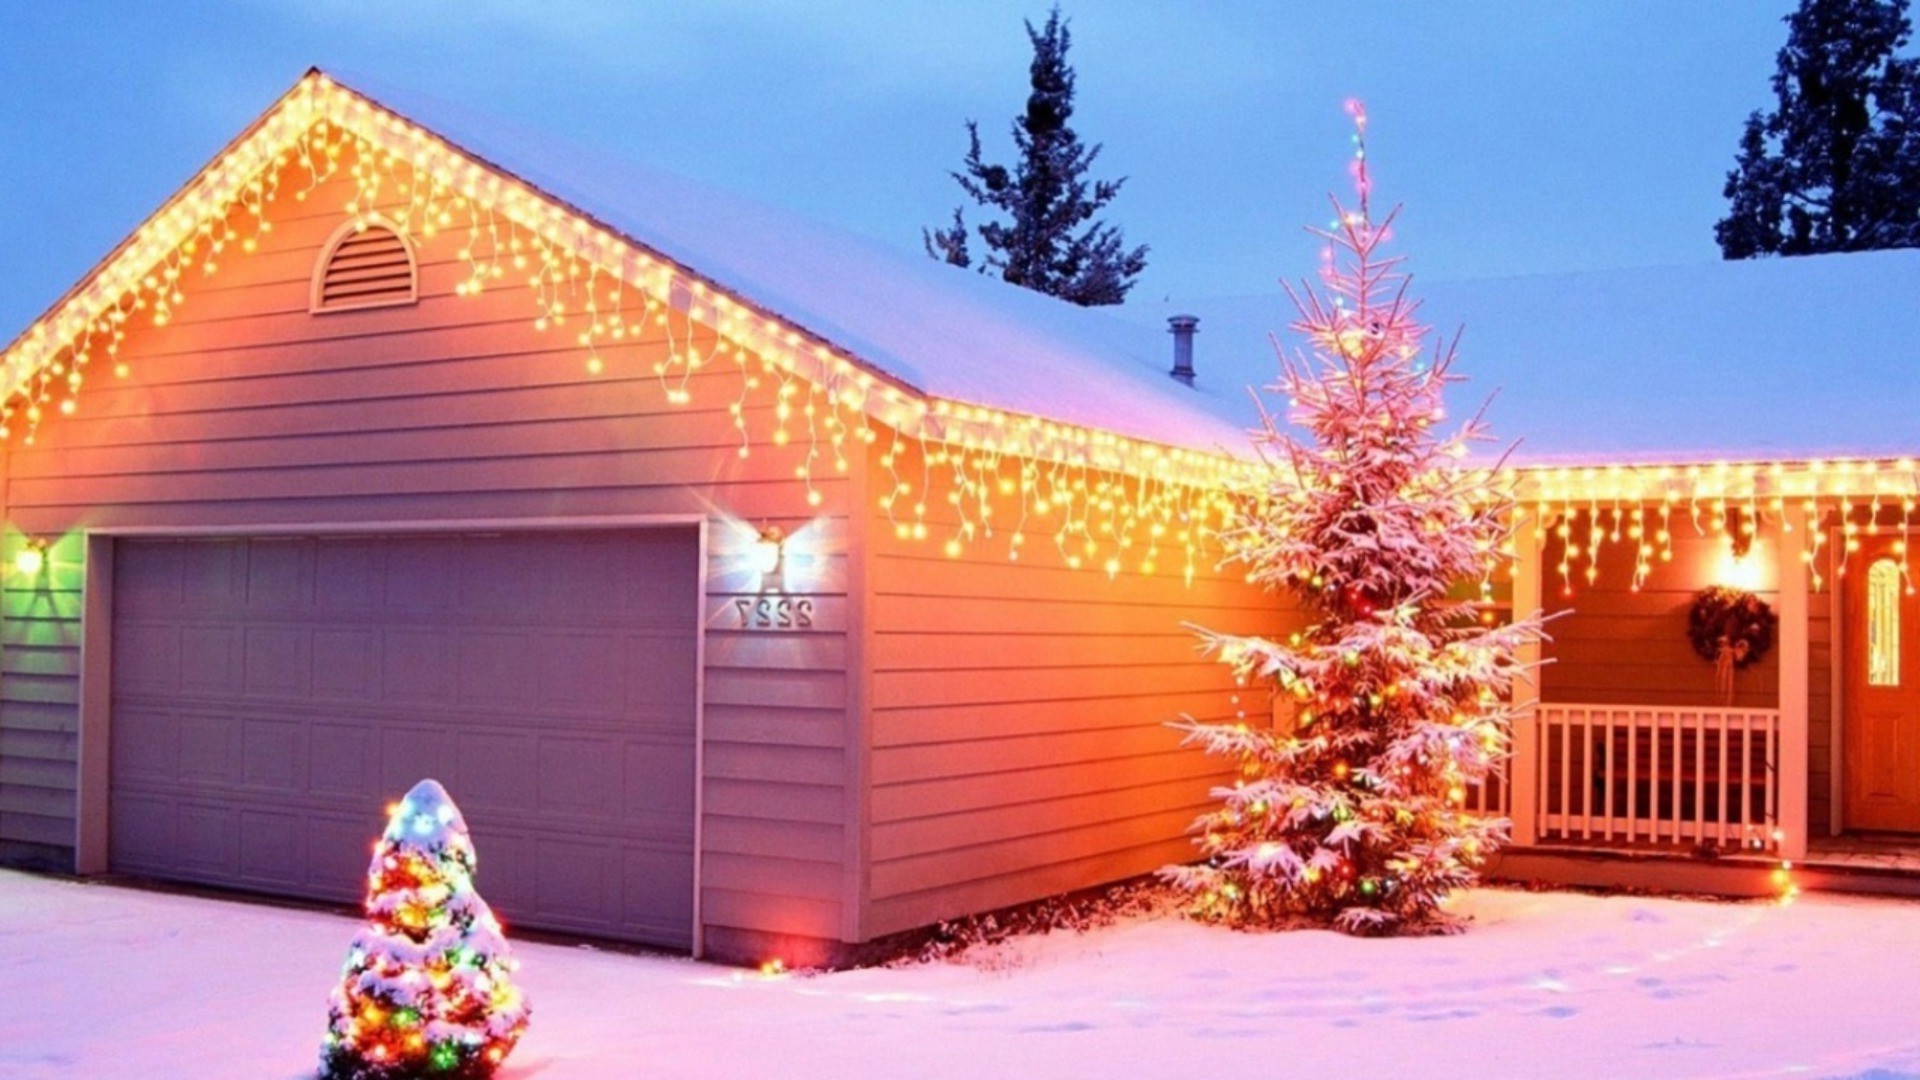 новый год на открытом воздухе архитектура древесины дом традиционные путешествия зима дерево рождество снег